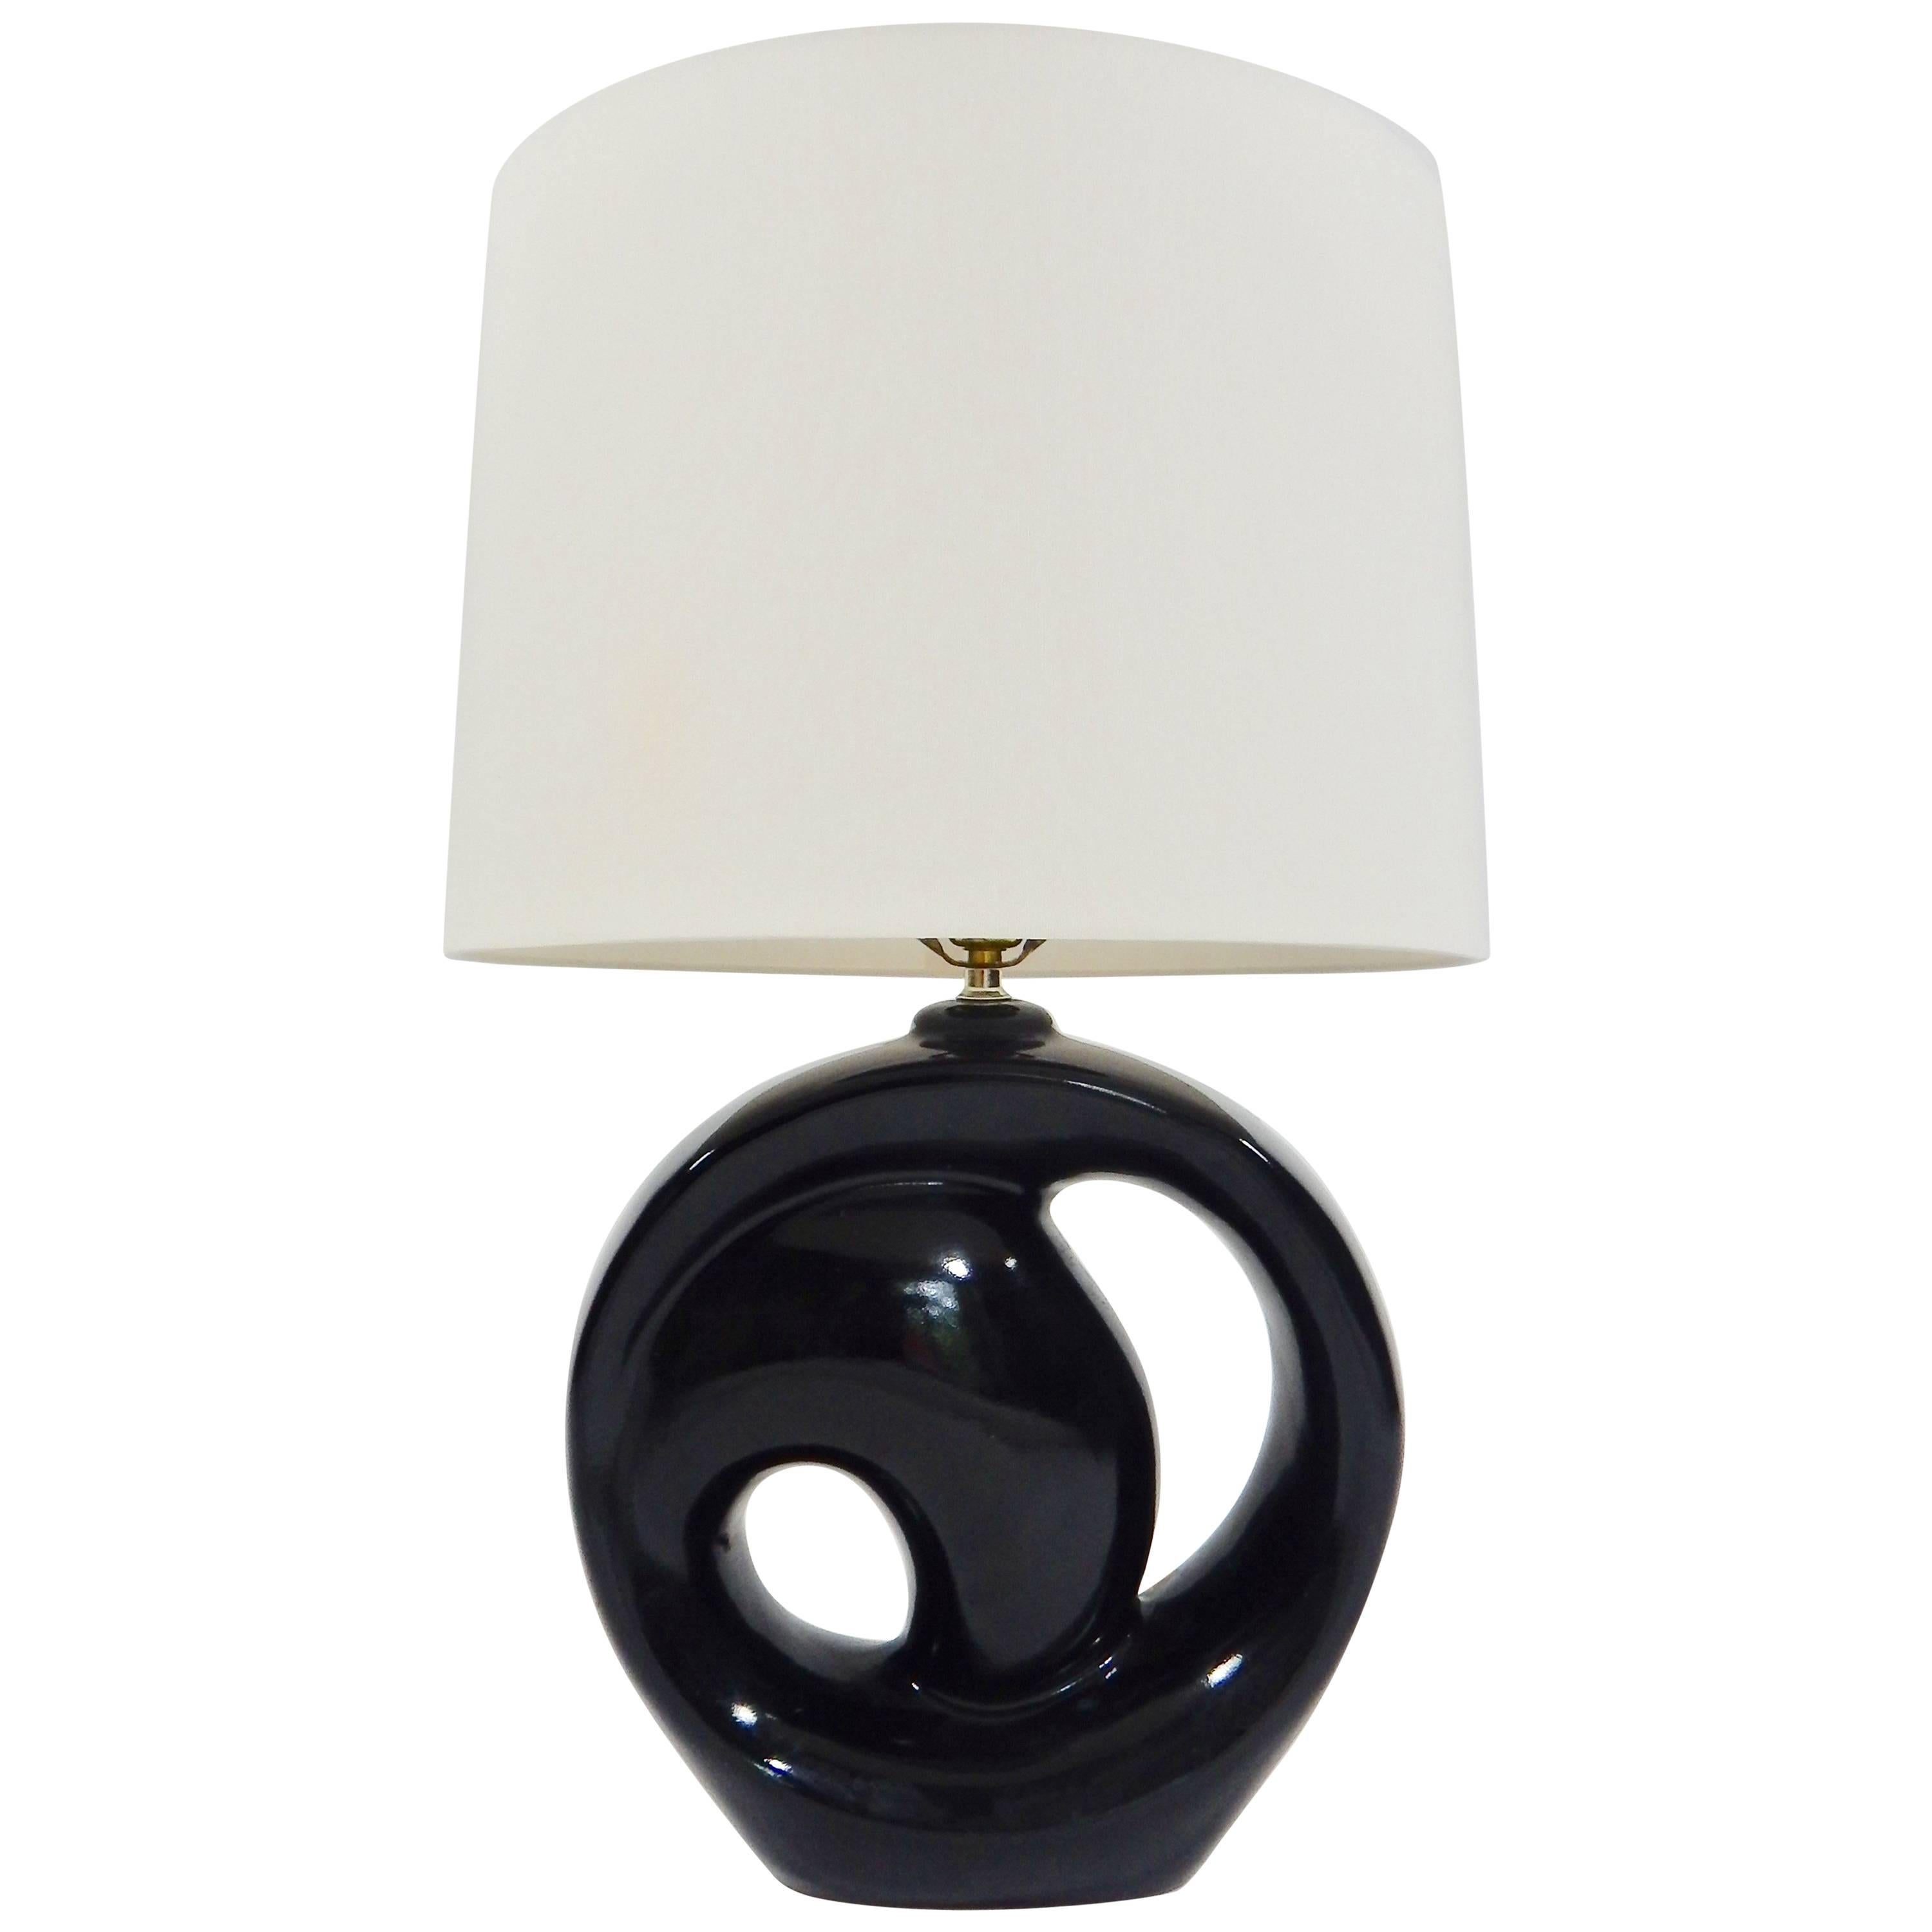 Modernist Sculptural Black Glazed Ceramic Table Lamp